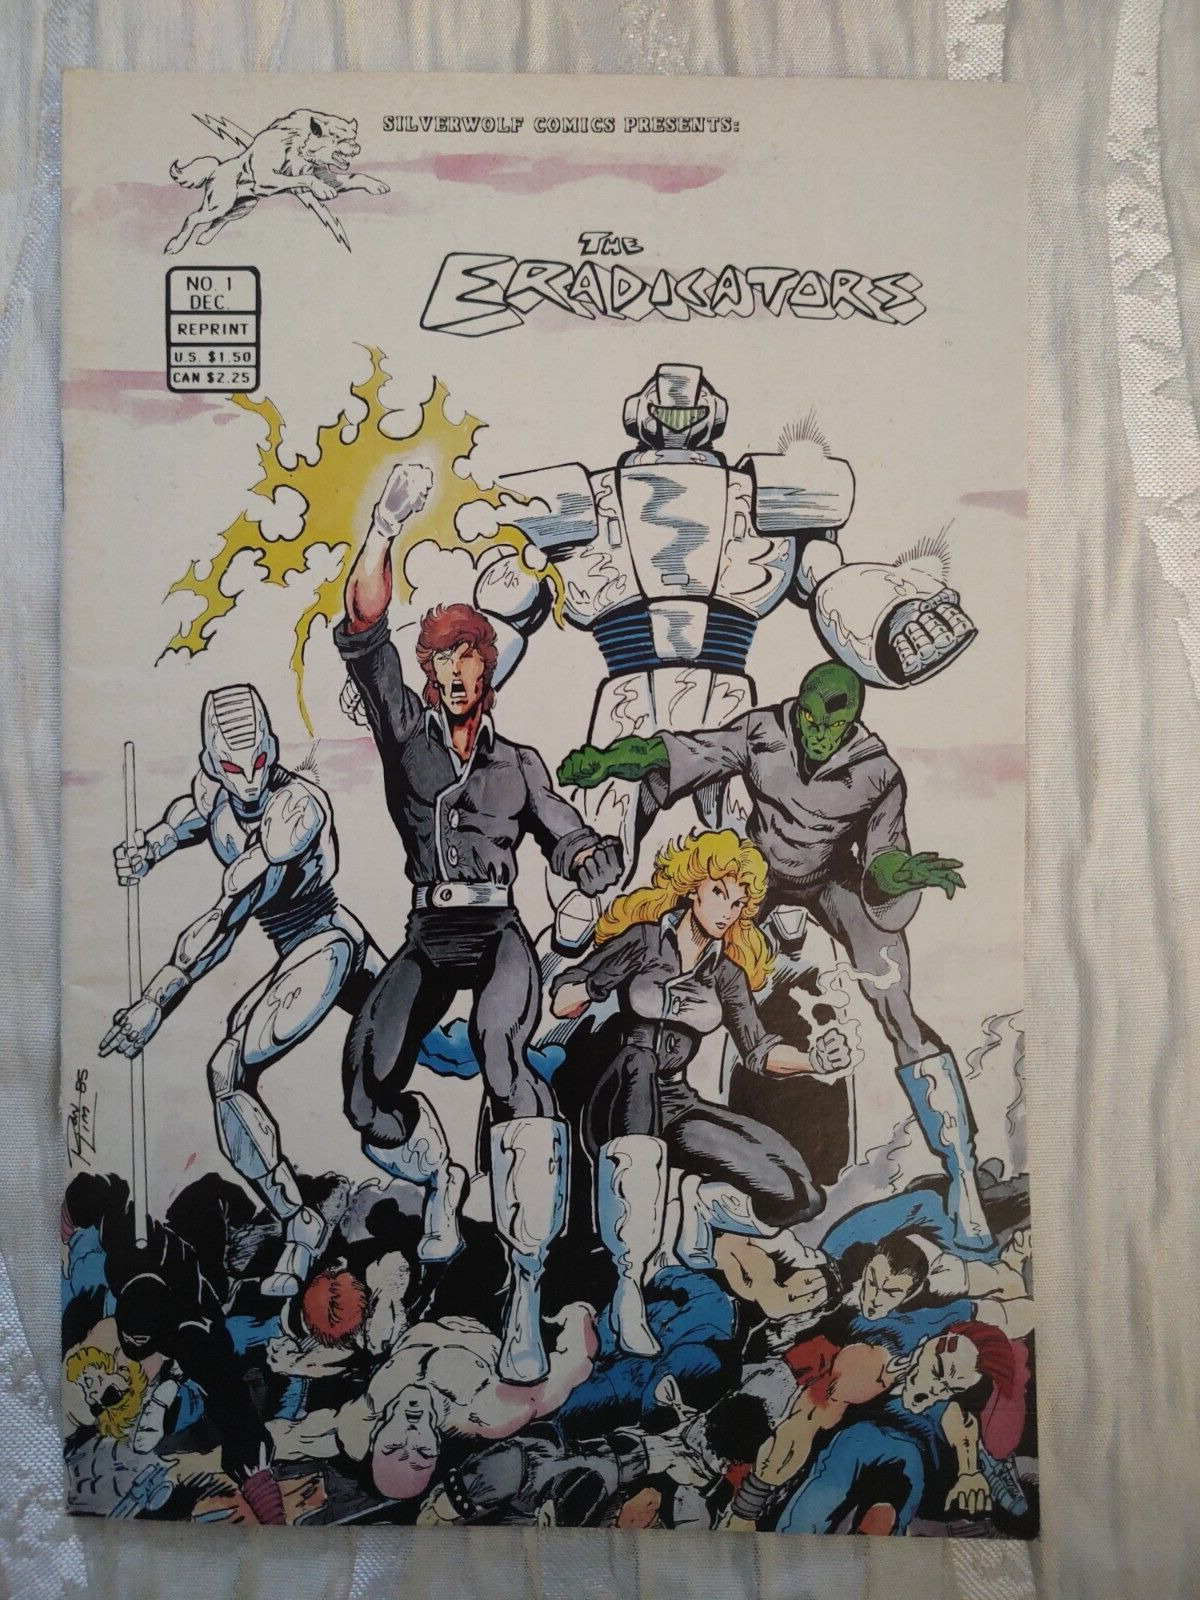 Cb26~comic book~rare the eradicators issue #1 Dec